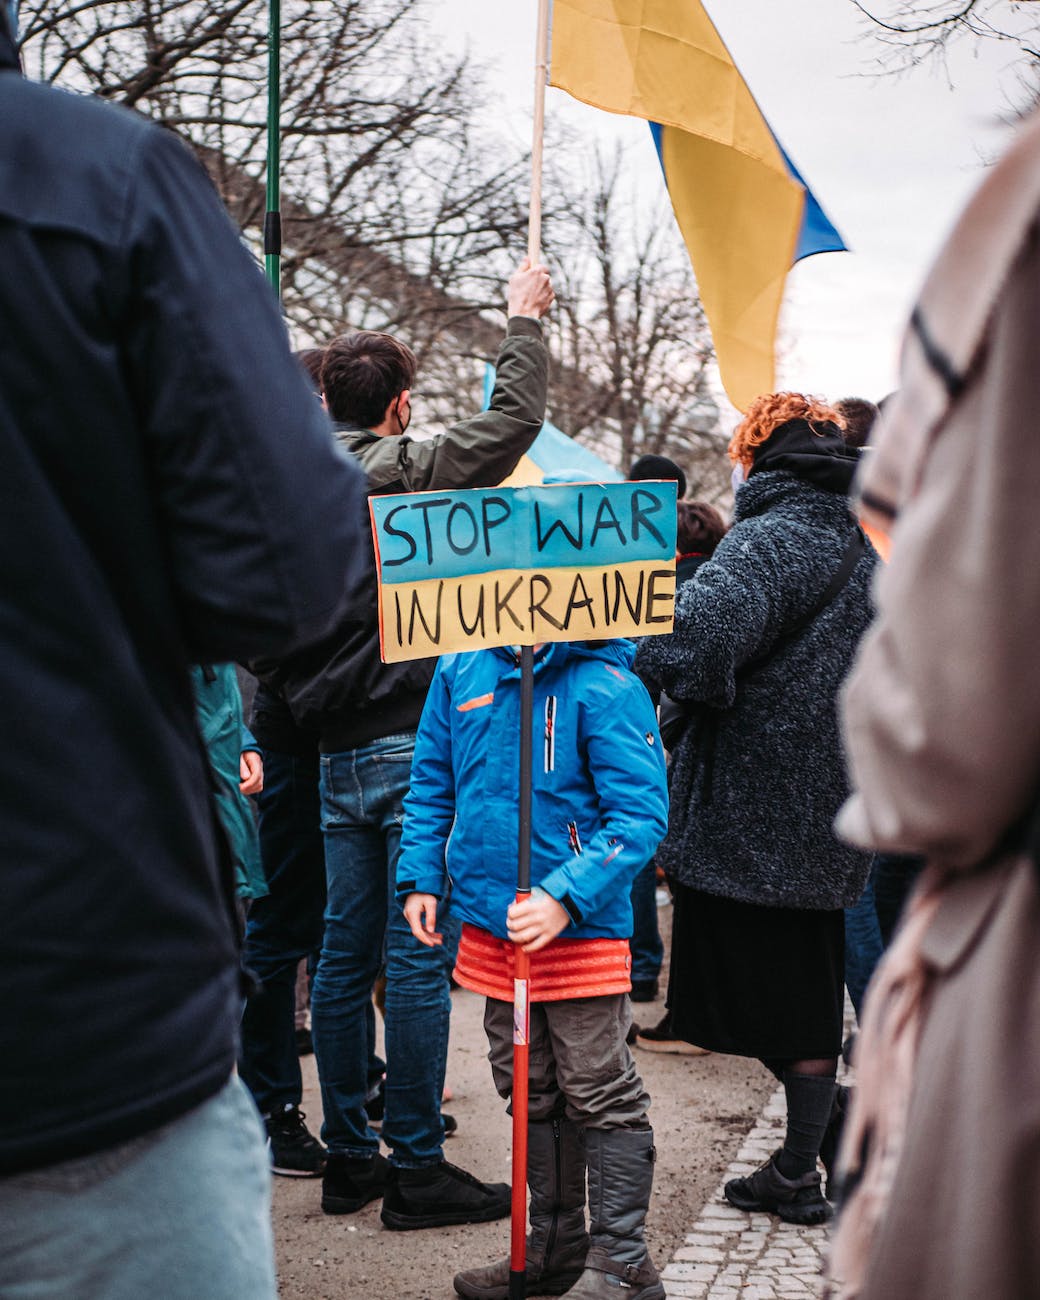 Child protesting Russia's War in Ukraine (Photo by Matti Karstedt)